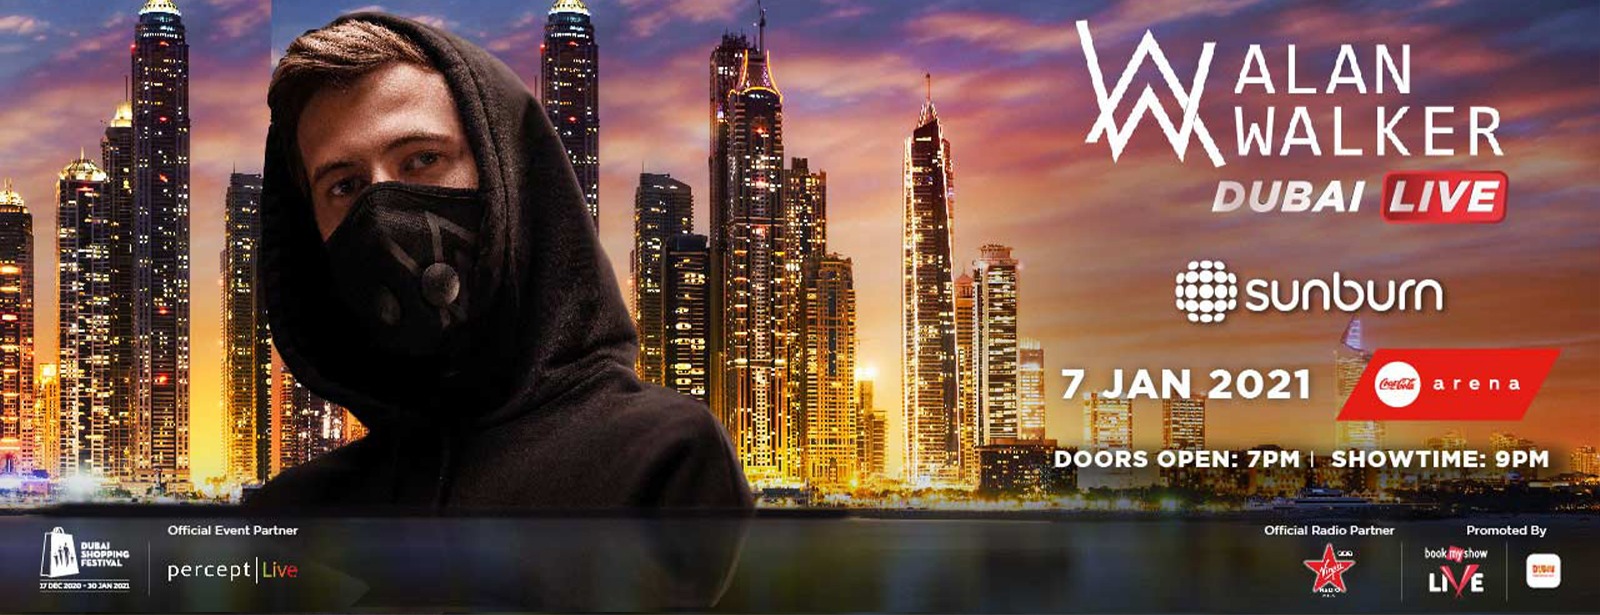 Alan Walker Concert - Coming Soon in UAE